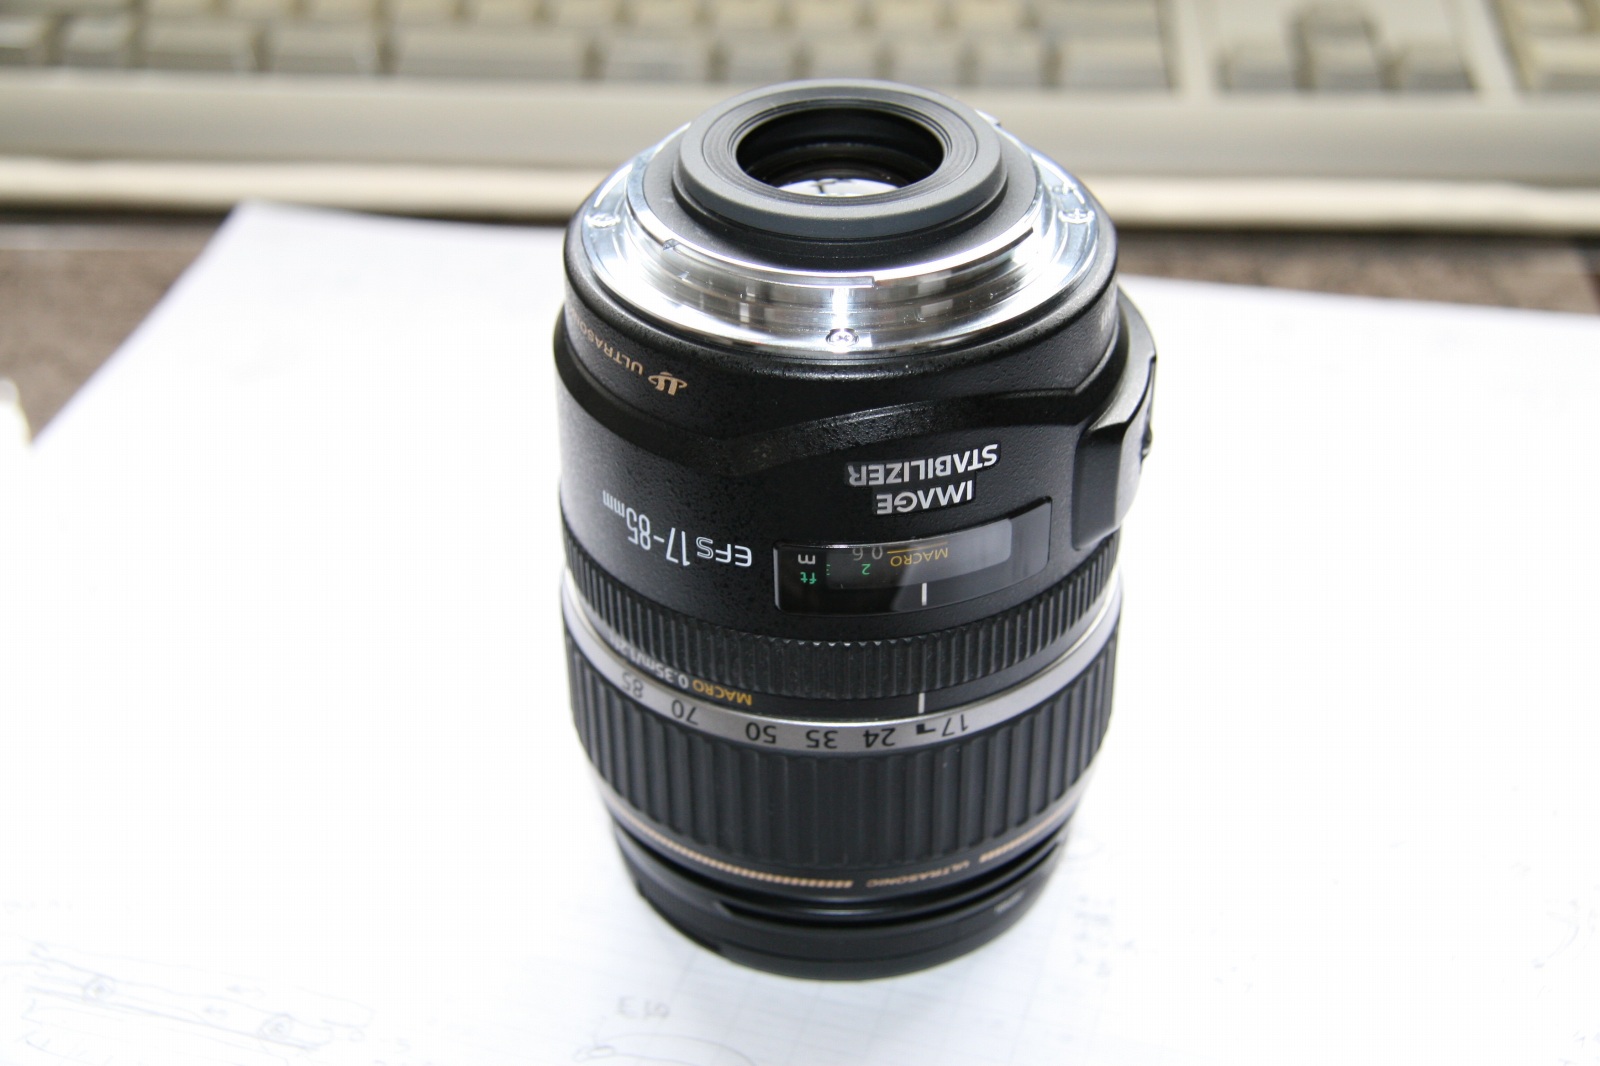 美品 Canon キャノン EF-S 17-85mm IS USM #5891